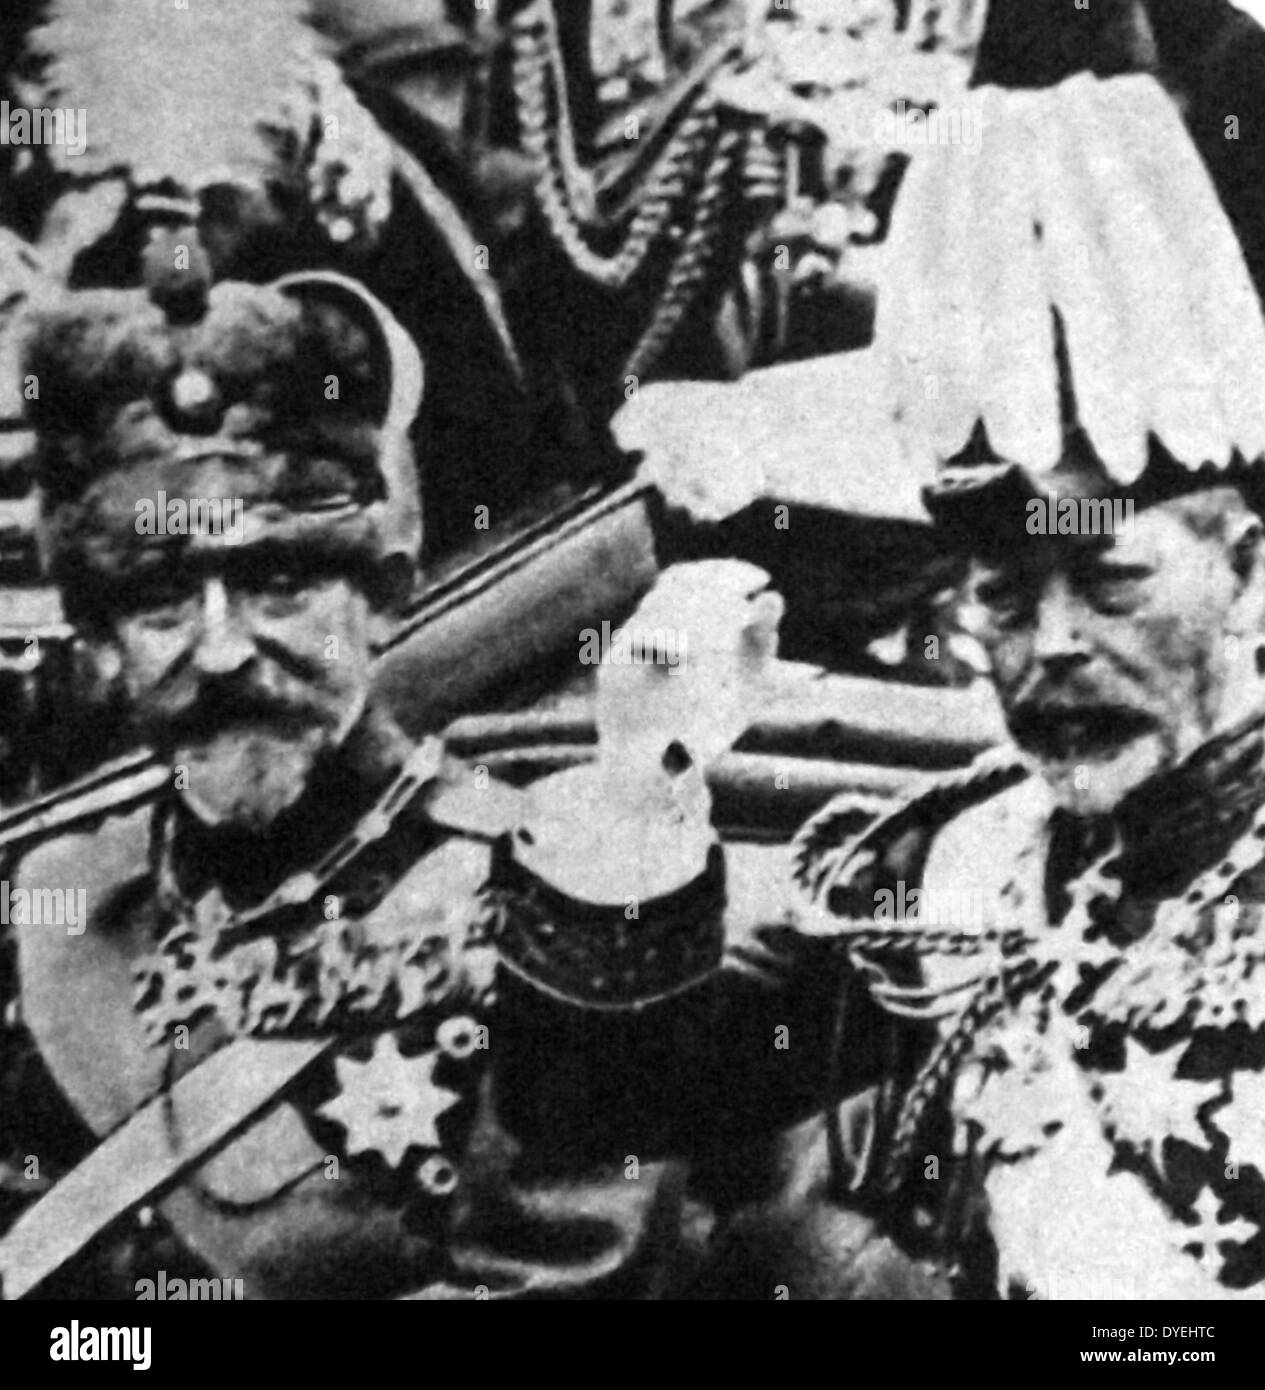 Ferdinand I (24 août 1865 - 20 juillet 1927) était le roi des Roumains de 10 octobre 1914 jusqu'à sa mort en 1927. vu ici à Londres avec le roi George V, vers 1930 Banque D'Images